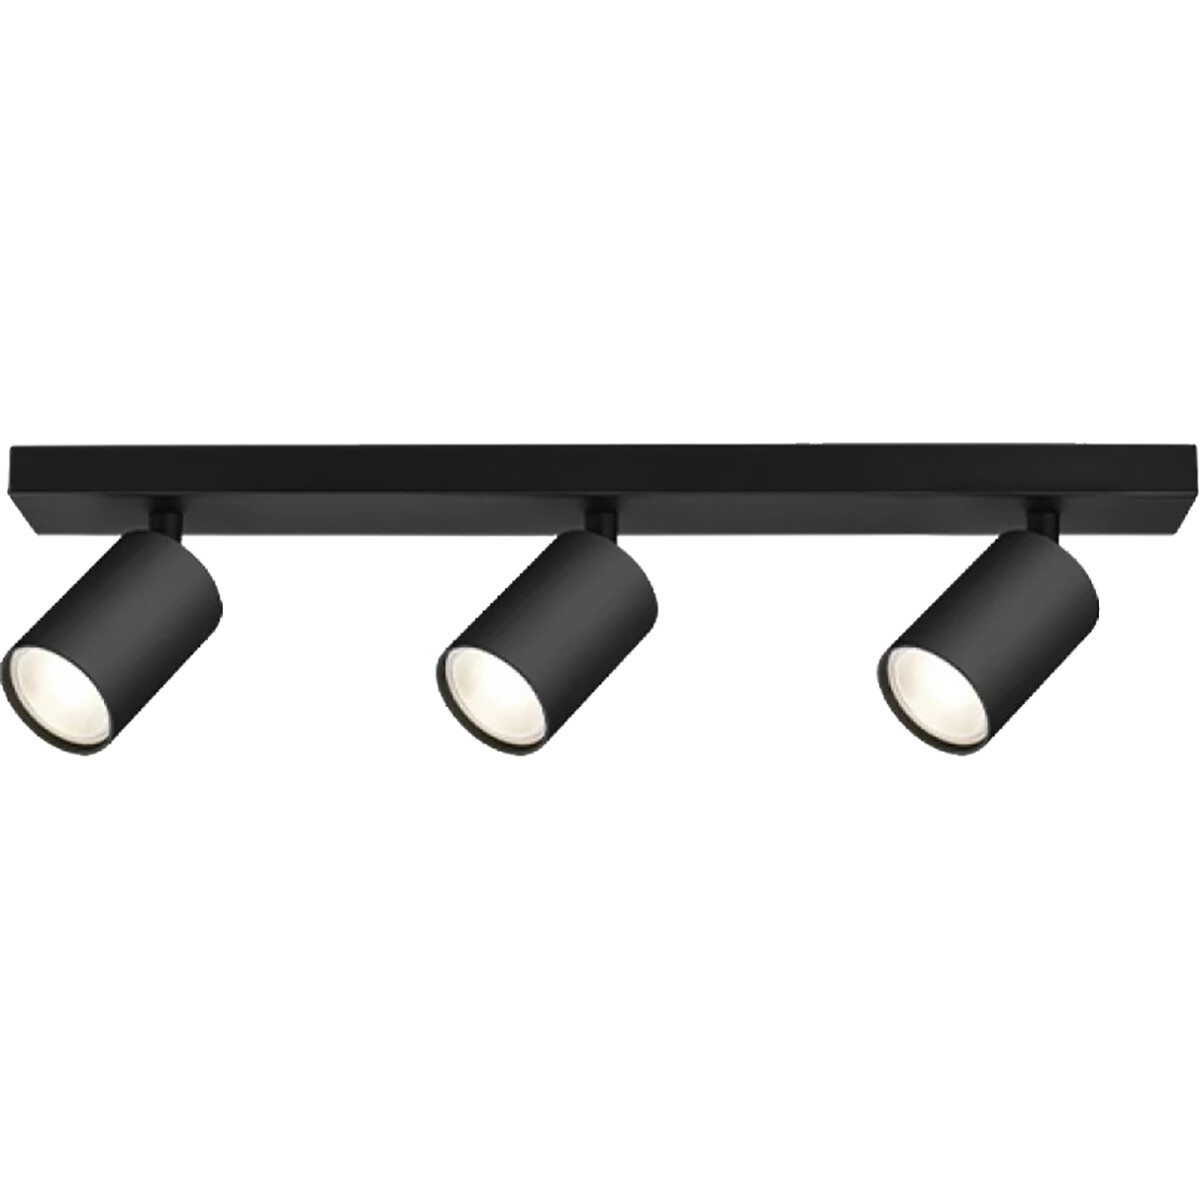 LED Plafondspot - Brinton Betin - GU10 Fitting - 3-lichts - Rond - Mat Zwart - Kantelbaar - Aluminiu